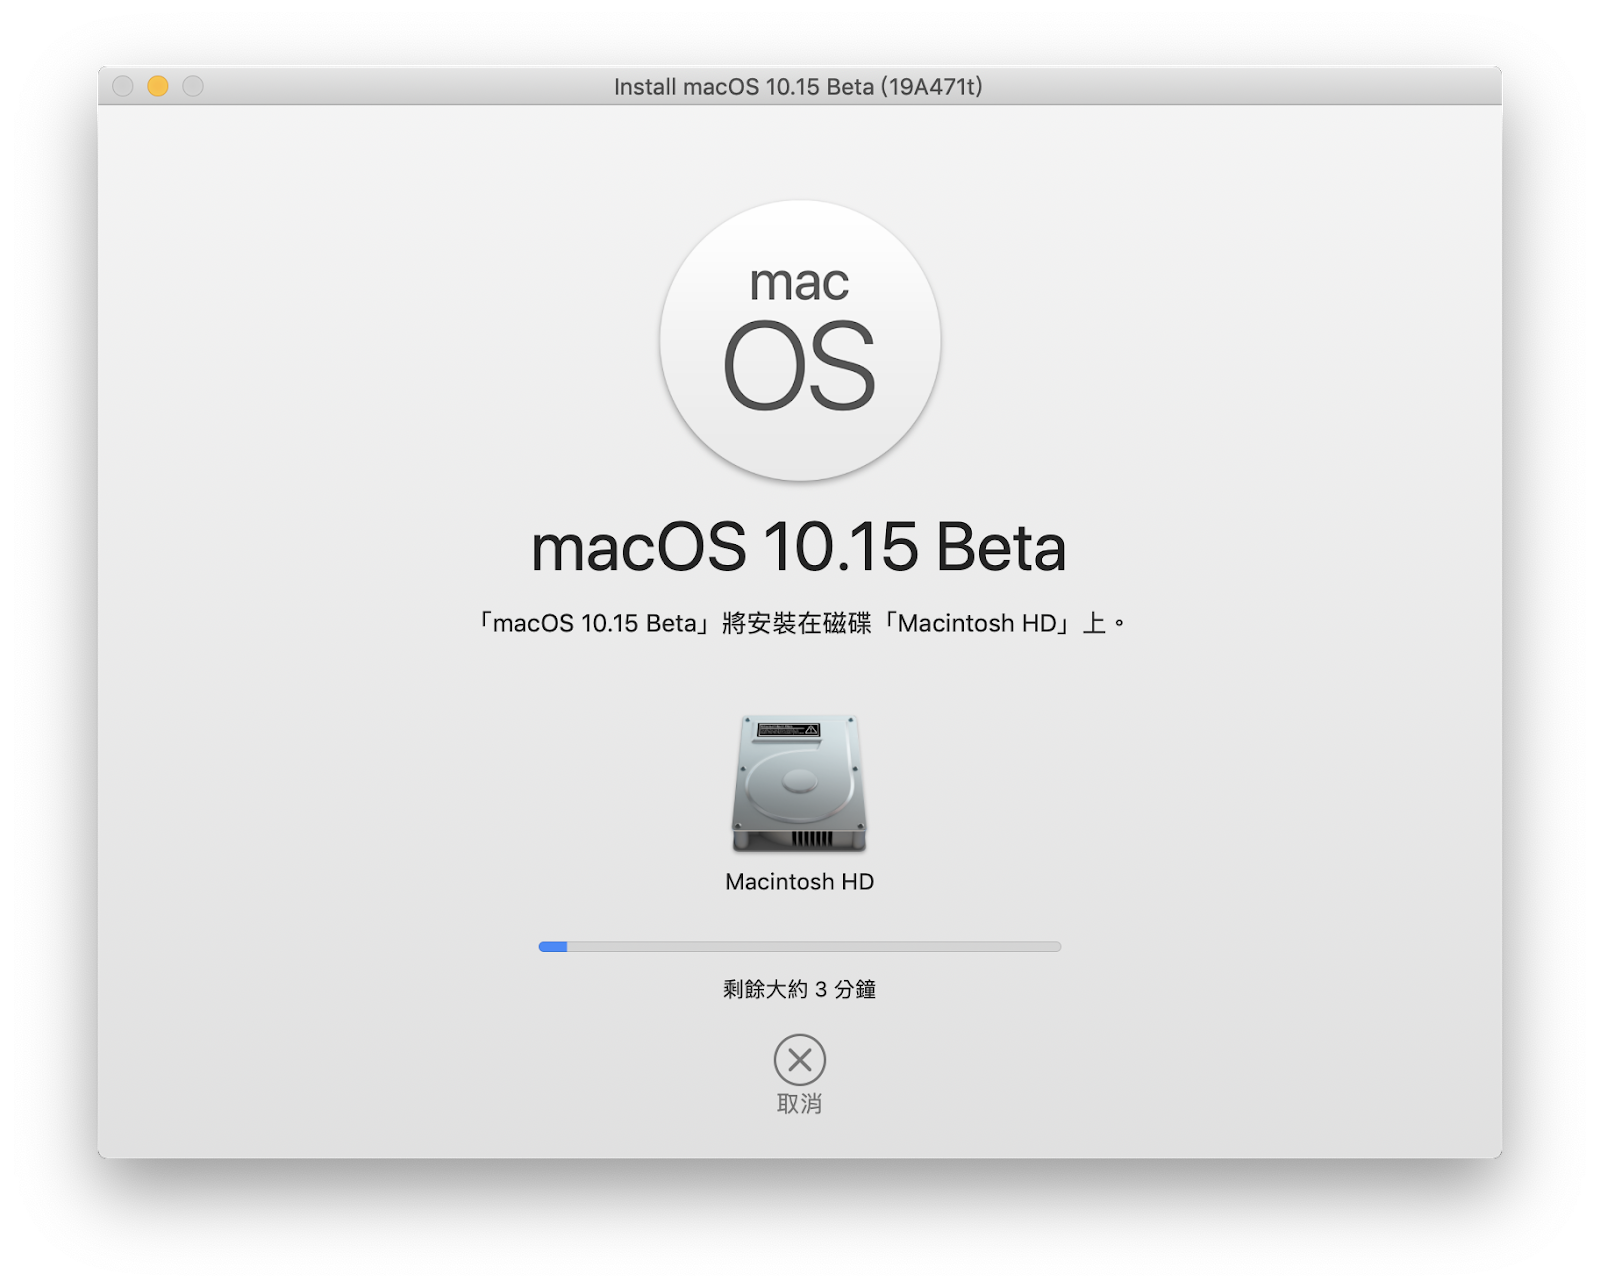 macOS 10.15 Beta